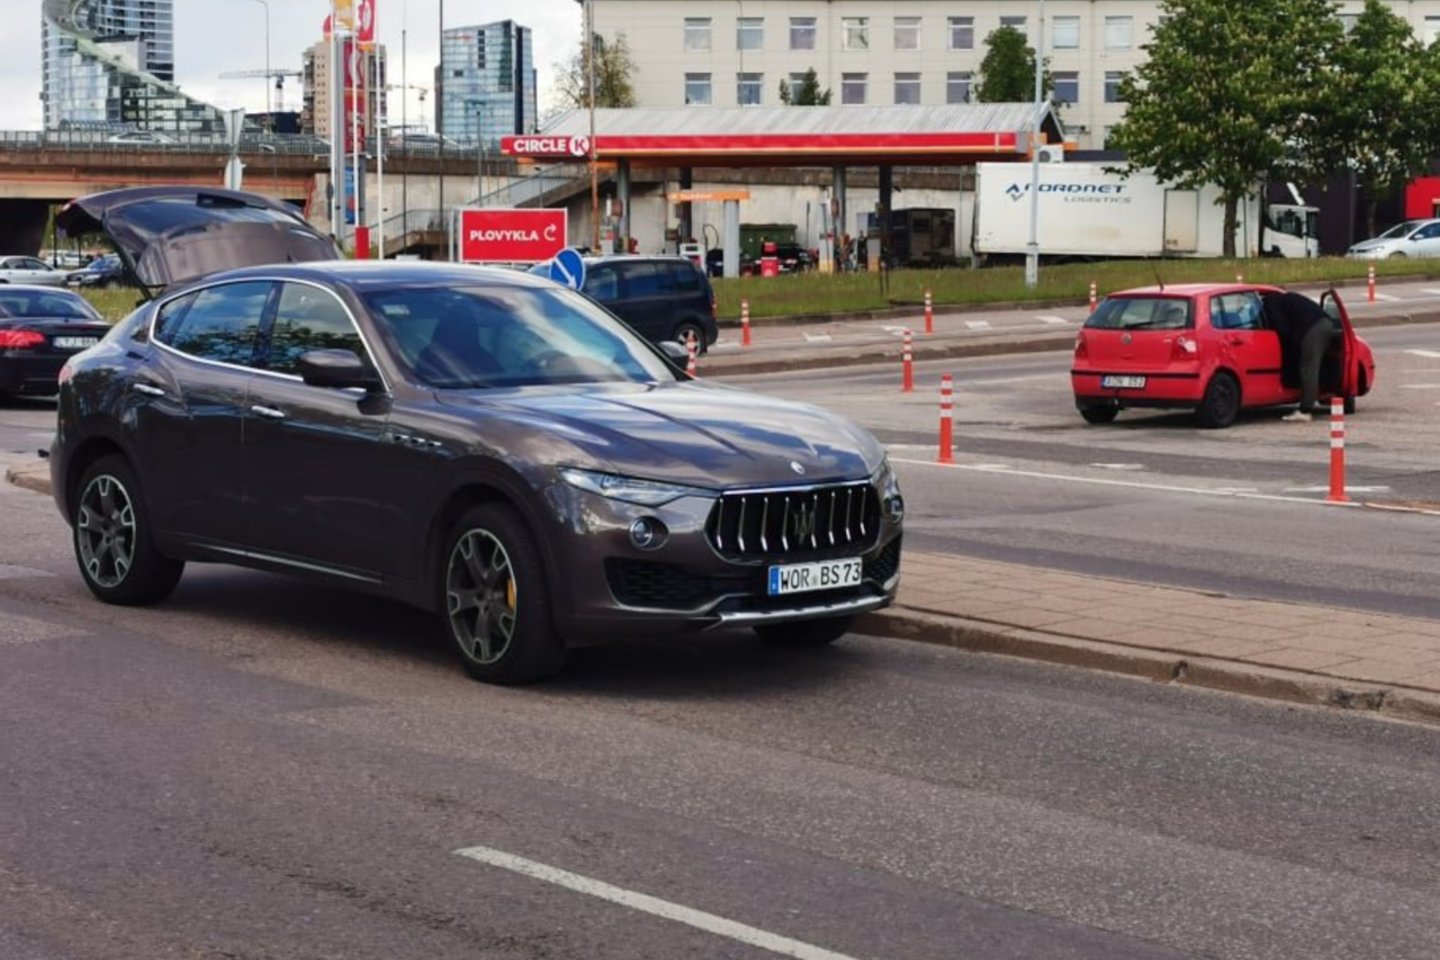  Vilniaus centre girtas vairuotojas sukėlė avariją, per kurią sudaužyti keturi automobiliai - tarp jų ir prabangus „Maserati“.<br> T.Bauro nuotr.